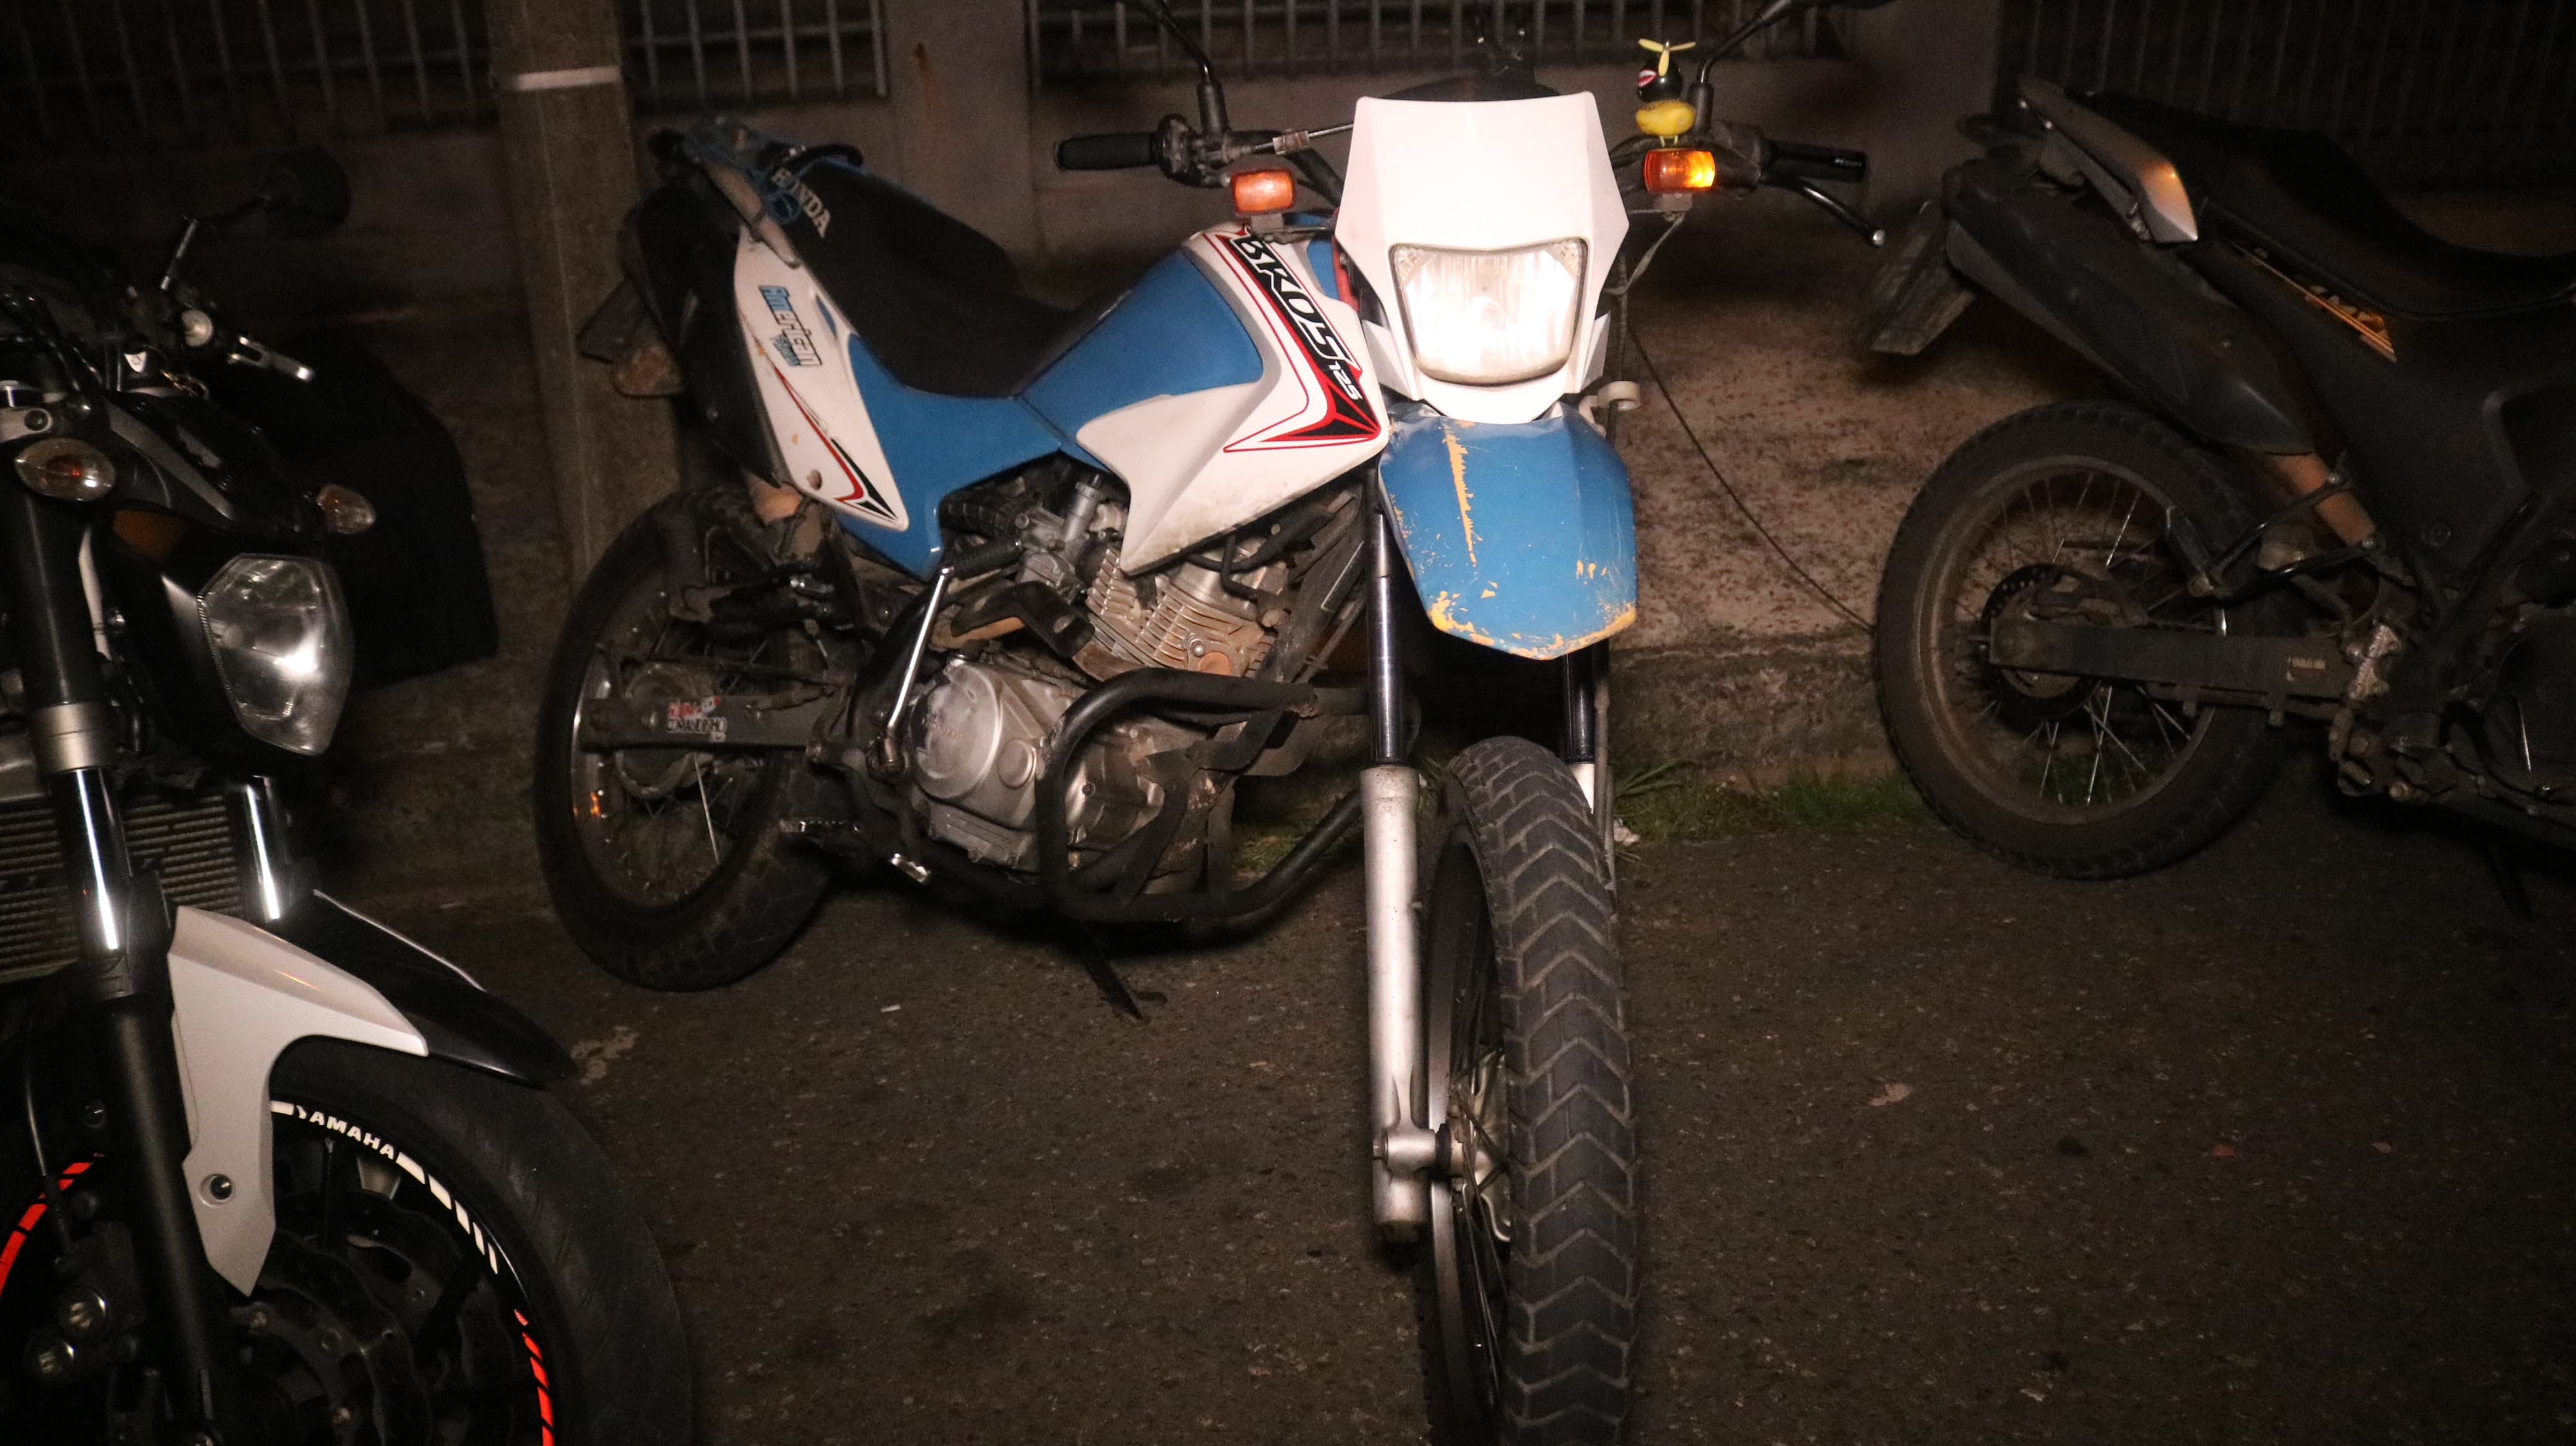 Motocicleta utilizada pelo jovem no momento do acidente.